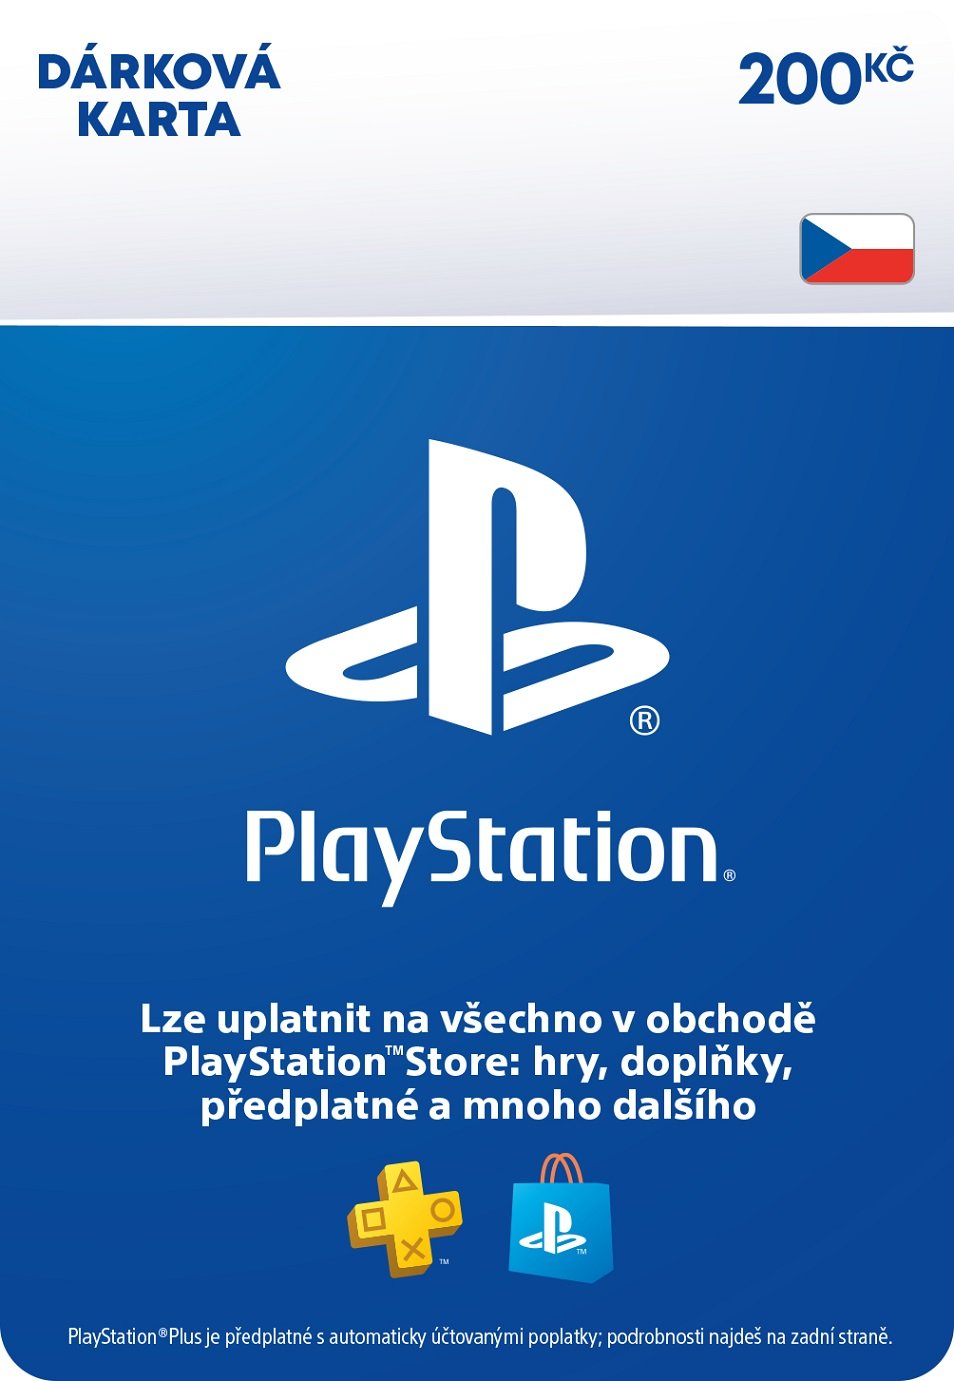 PlayStation Store – Dárková karta - 200 Kč (PS DIGITAL) (PS5)